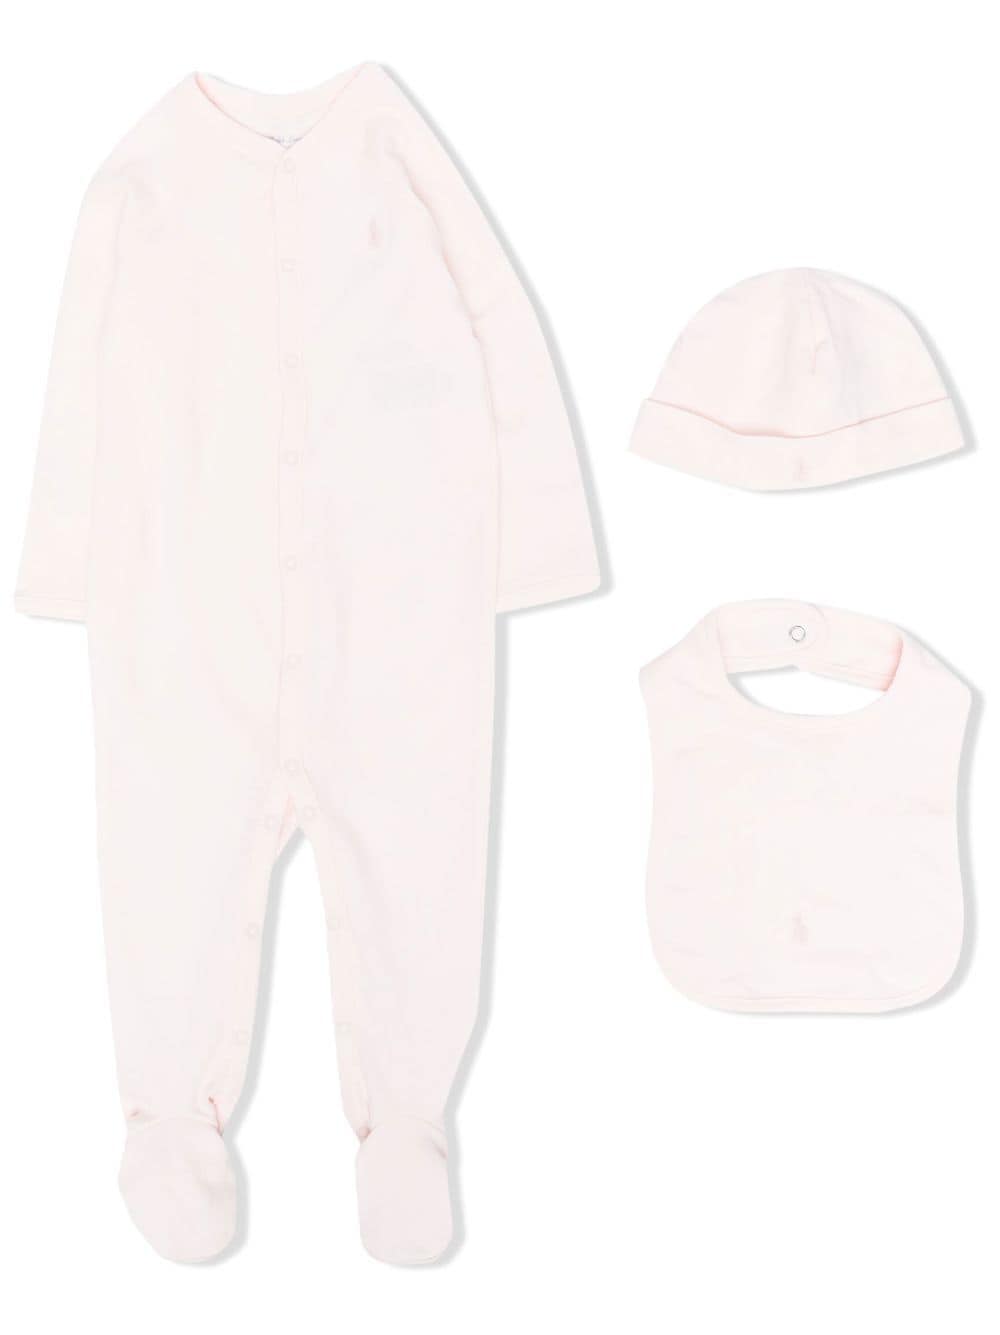 Ralph Lauren Kids & Baby Clothes